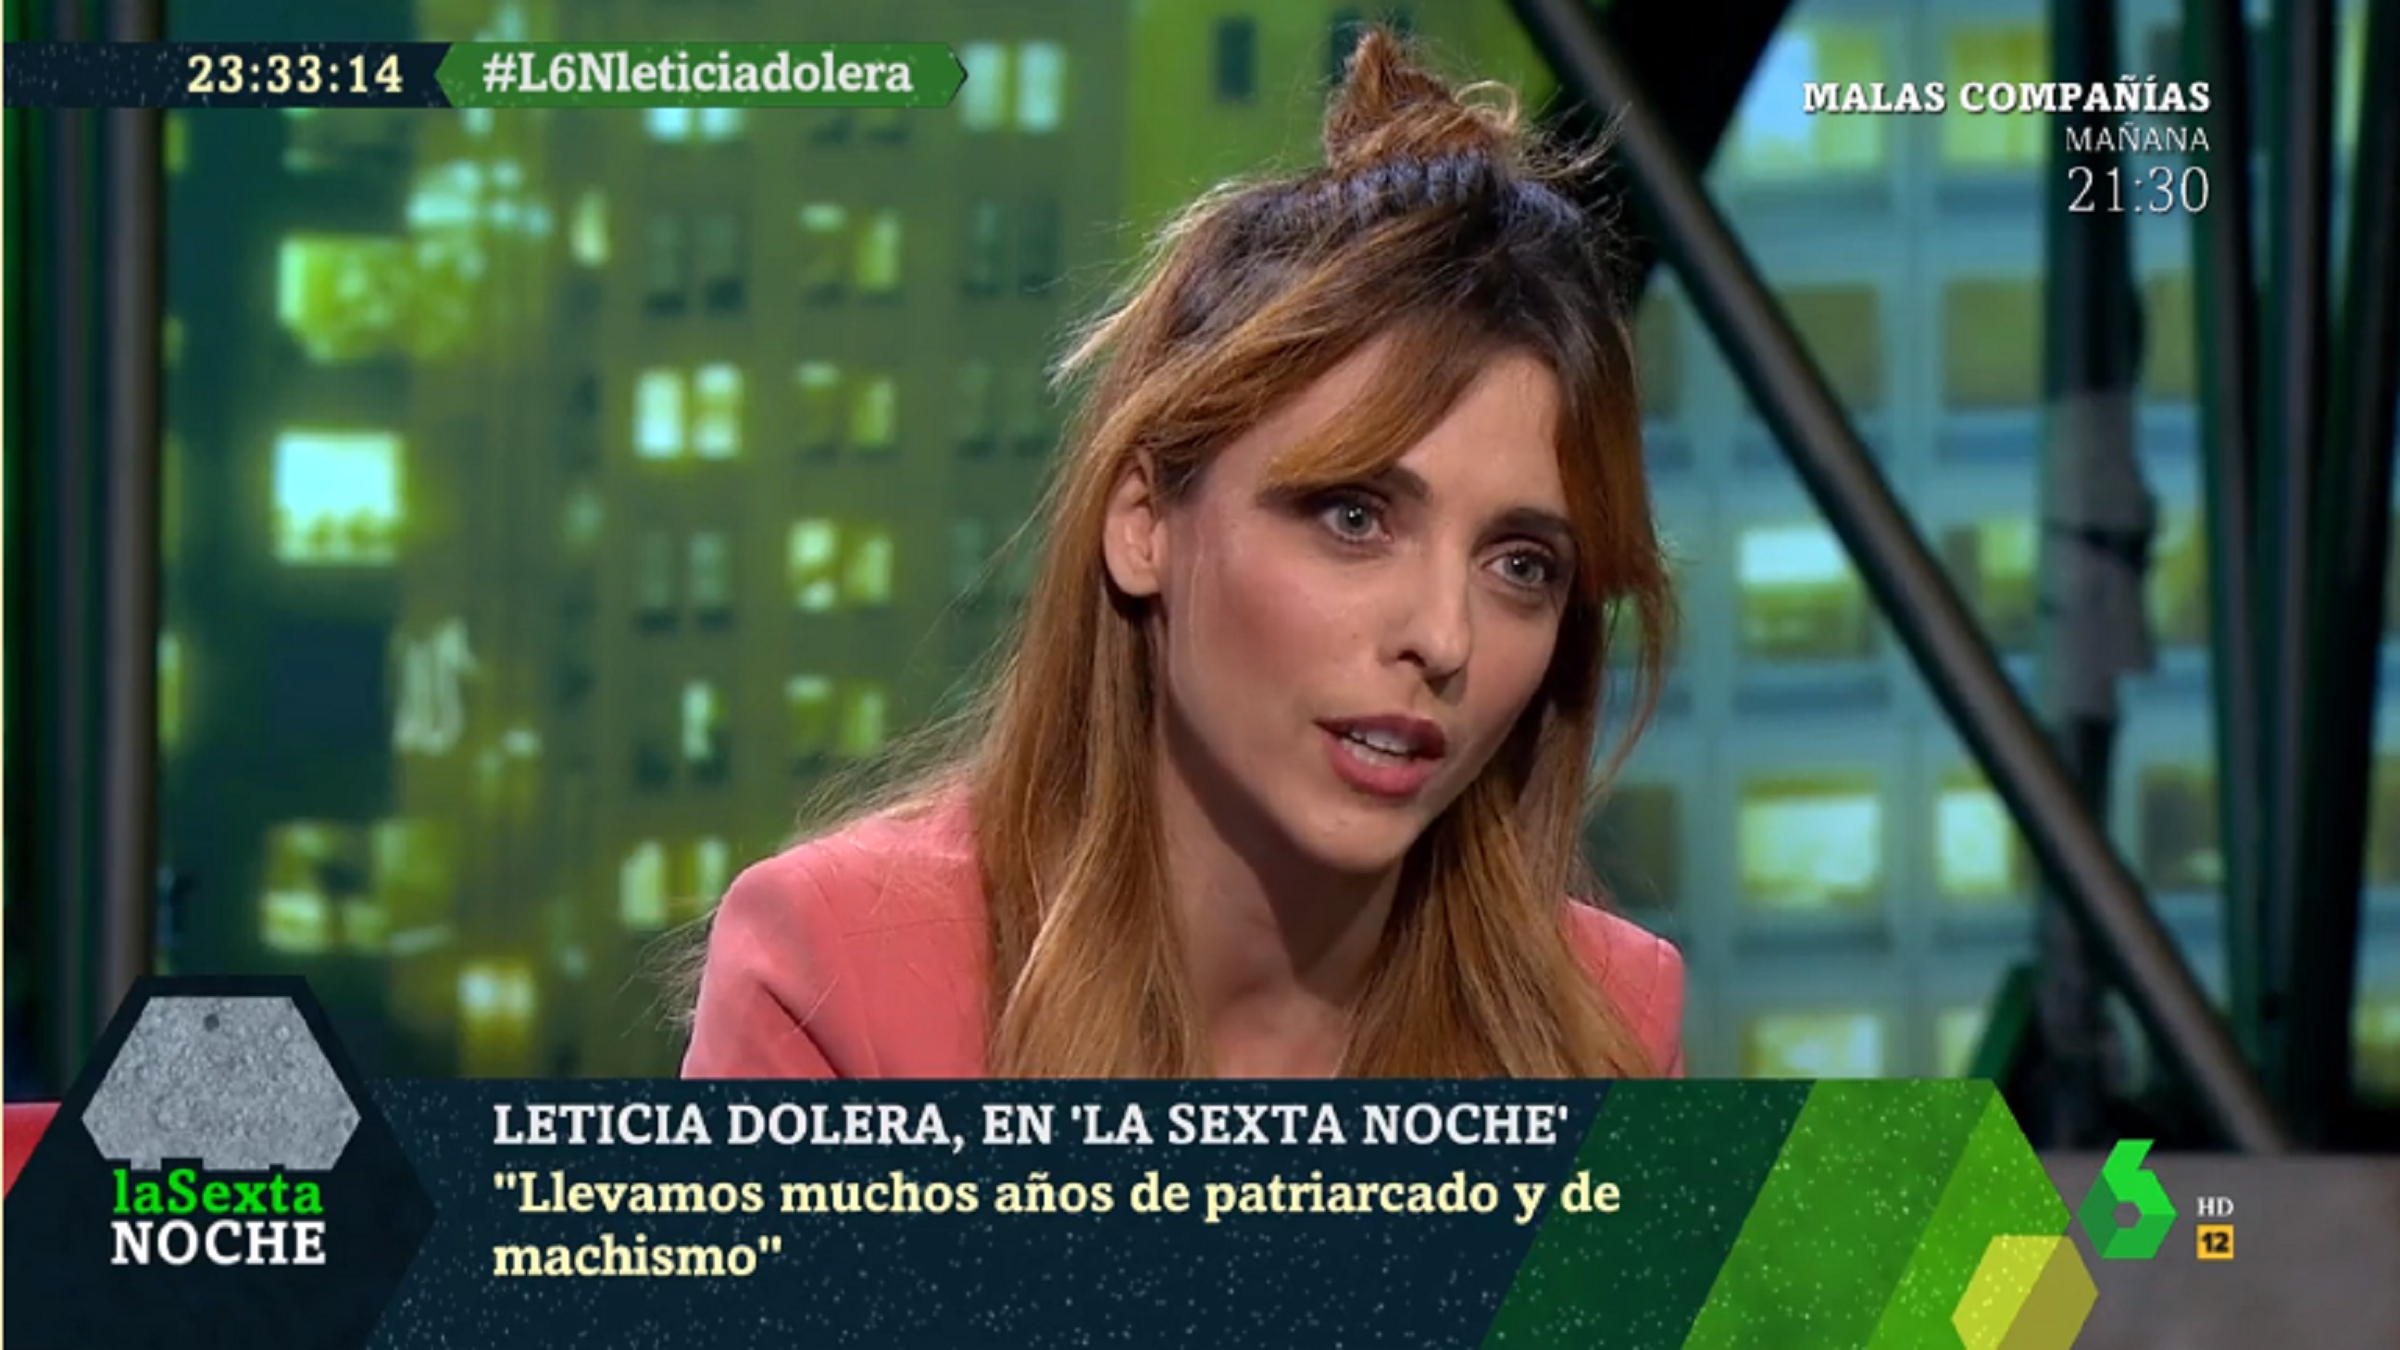 La crida de Leticia Dolera als homes: “No ens mireu, uniu-vos al feminisme”